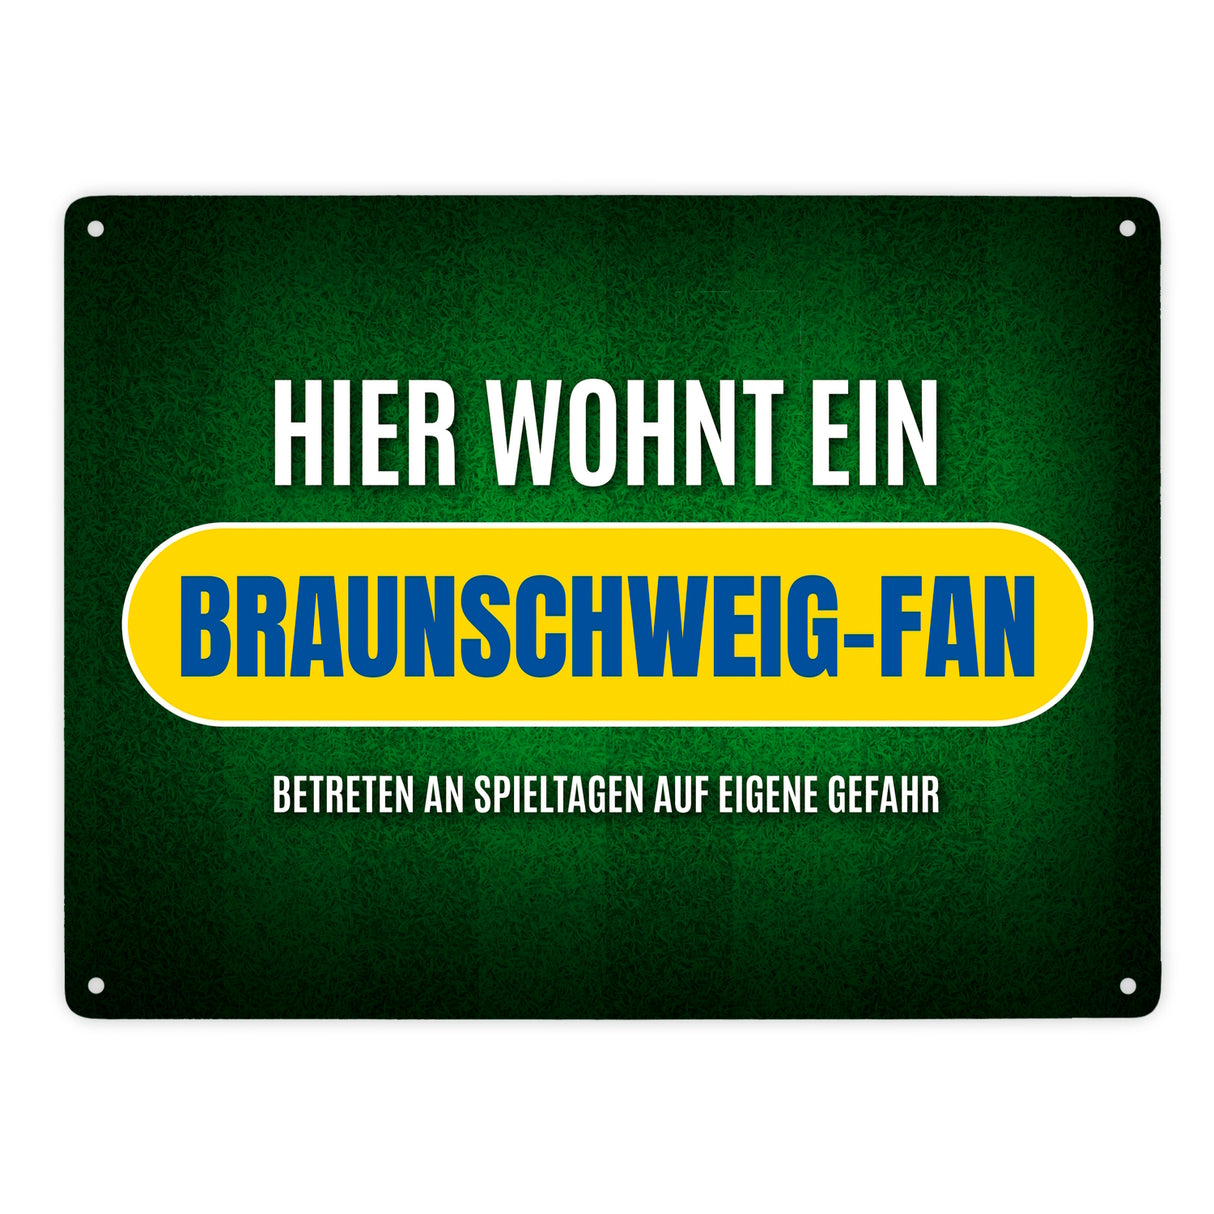 Hier wohnt ein Braunschweig-Fan Metallschild mit Rasen Motiv